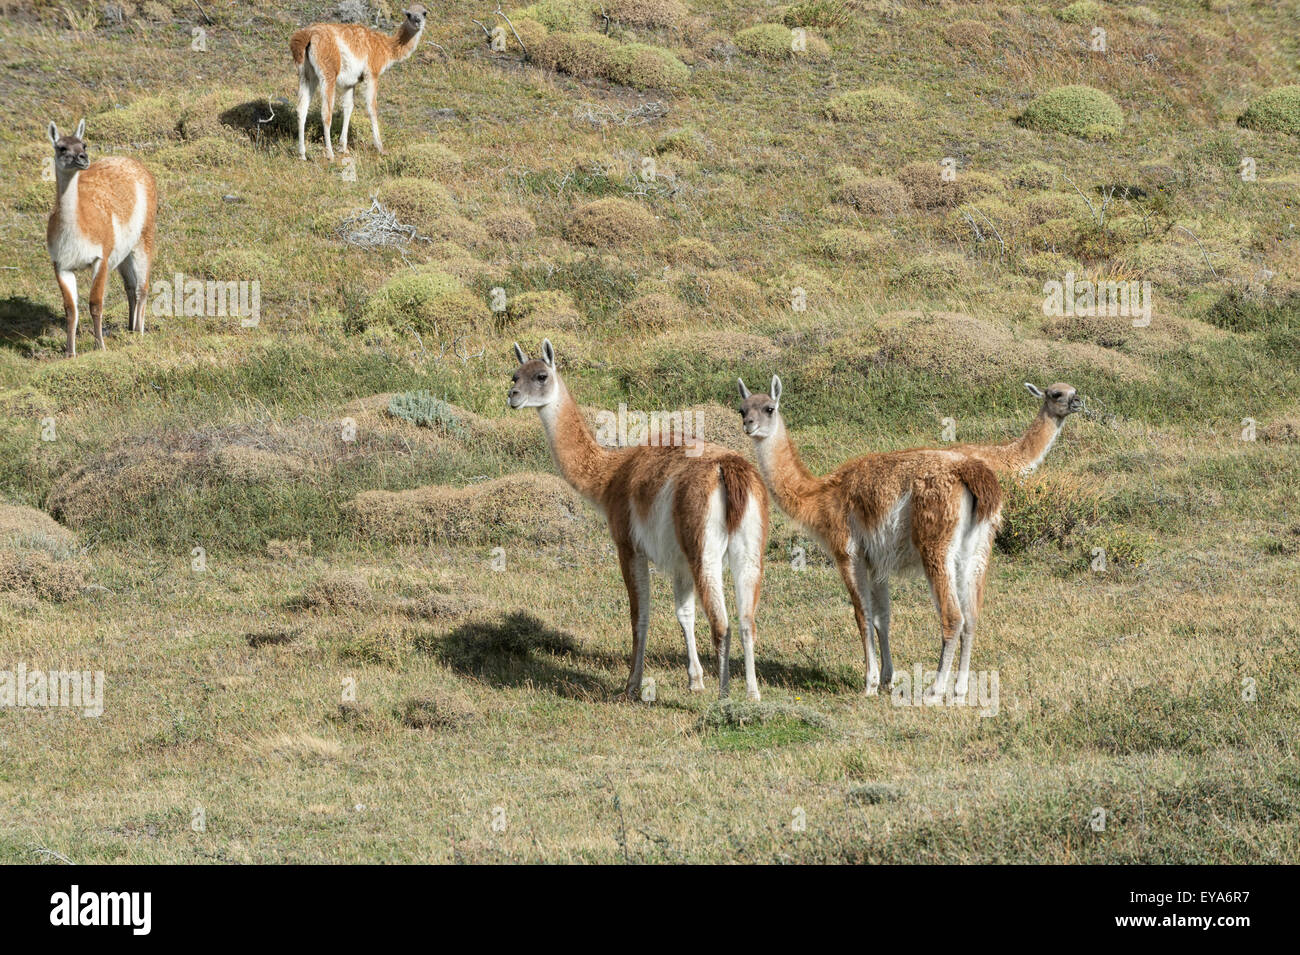 Guanacos (Lama guanicoe), Parc National Torres del Paine, Patagonie chilienne, Chili Banque D'Images